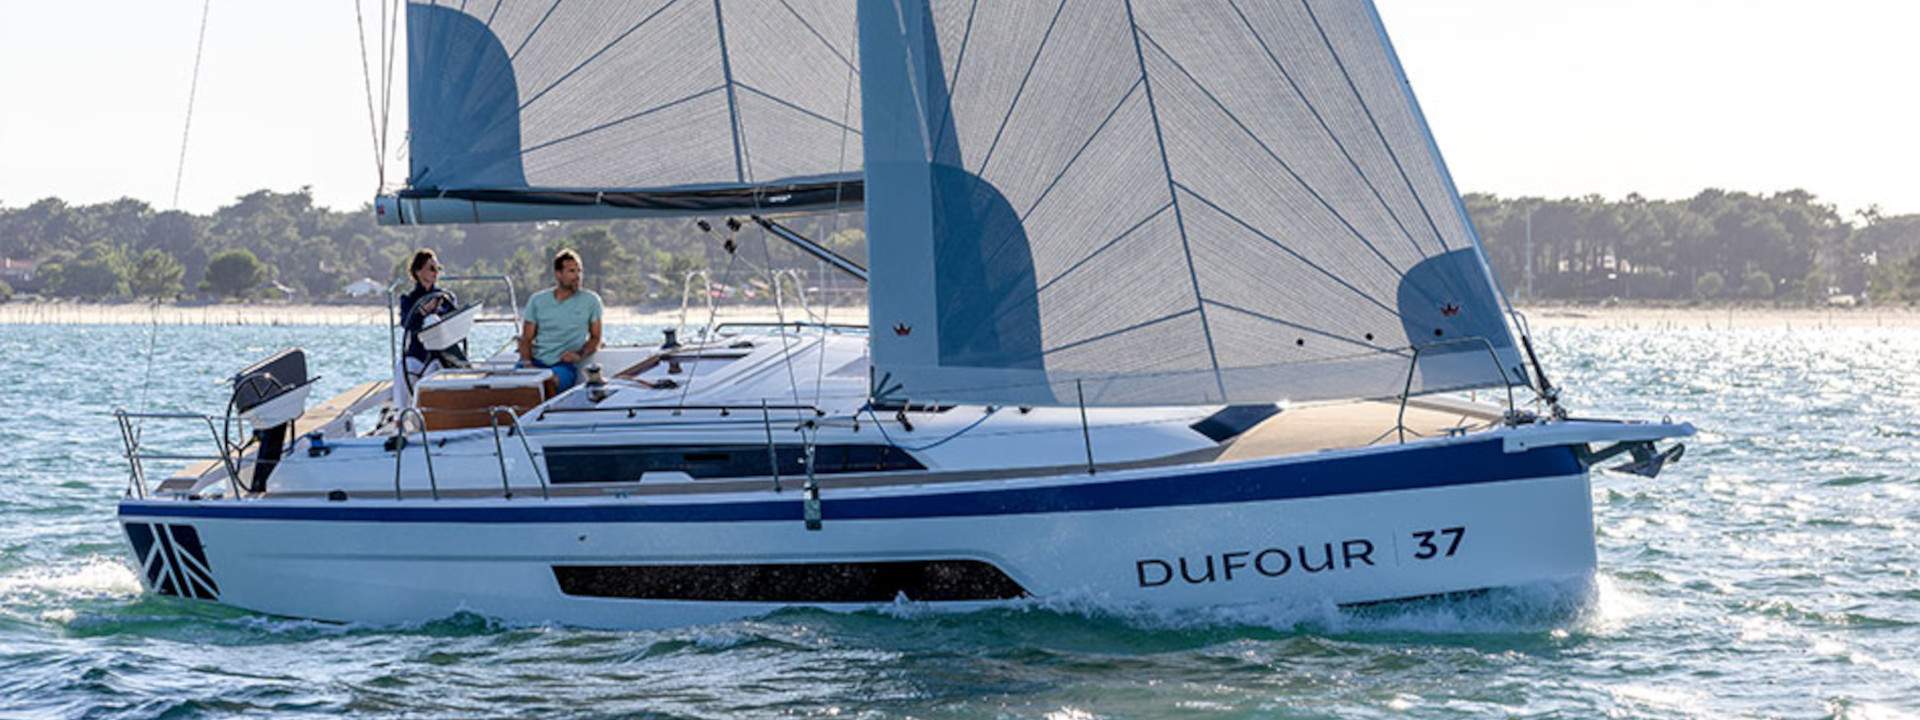 Segelboot Dufour 37